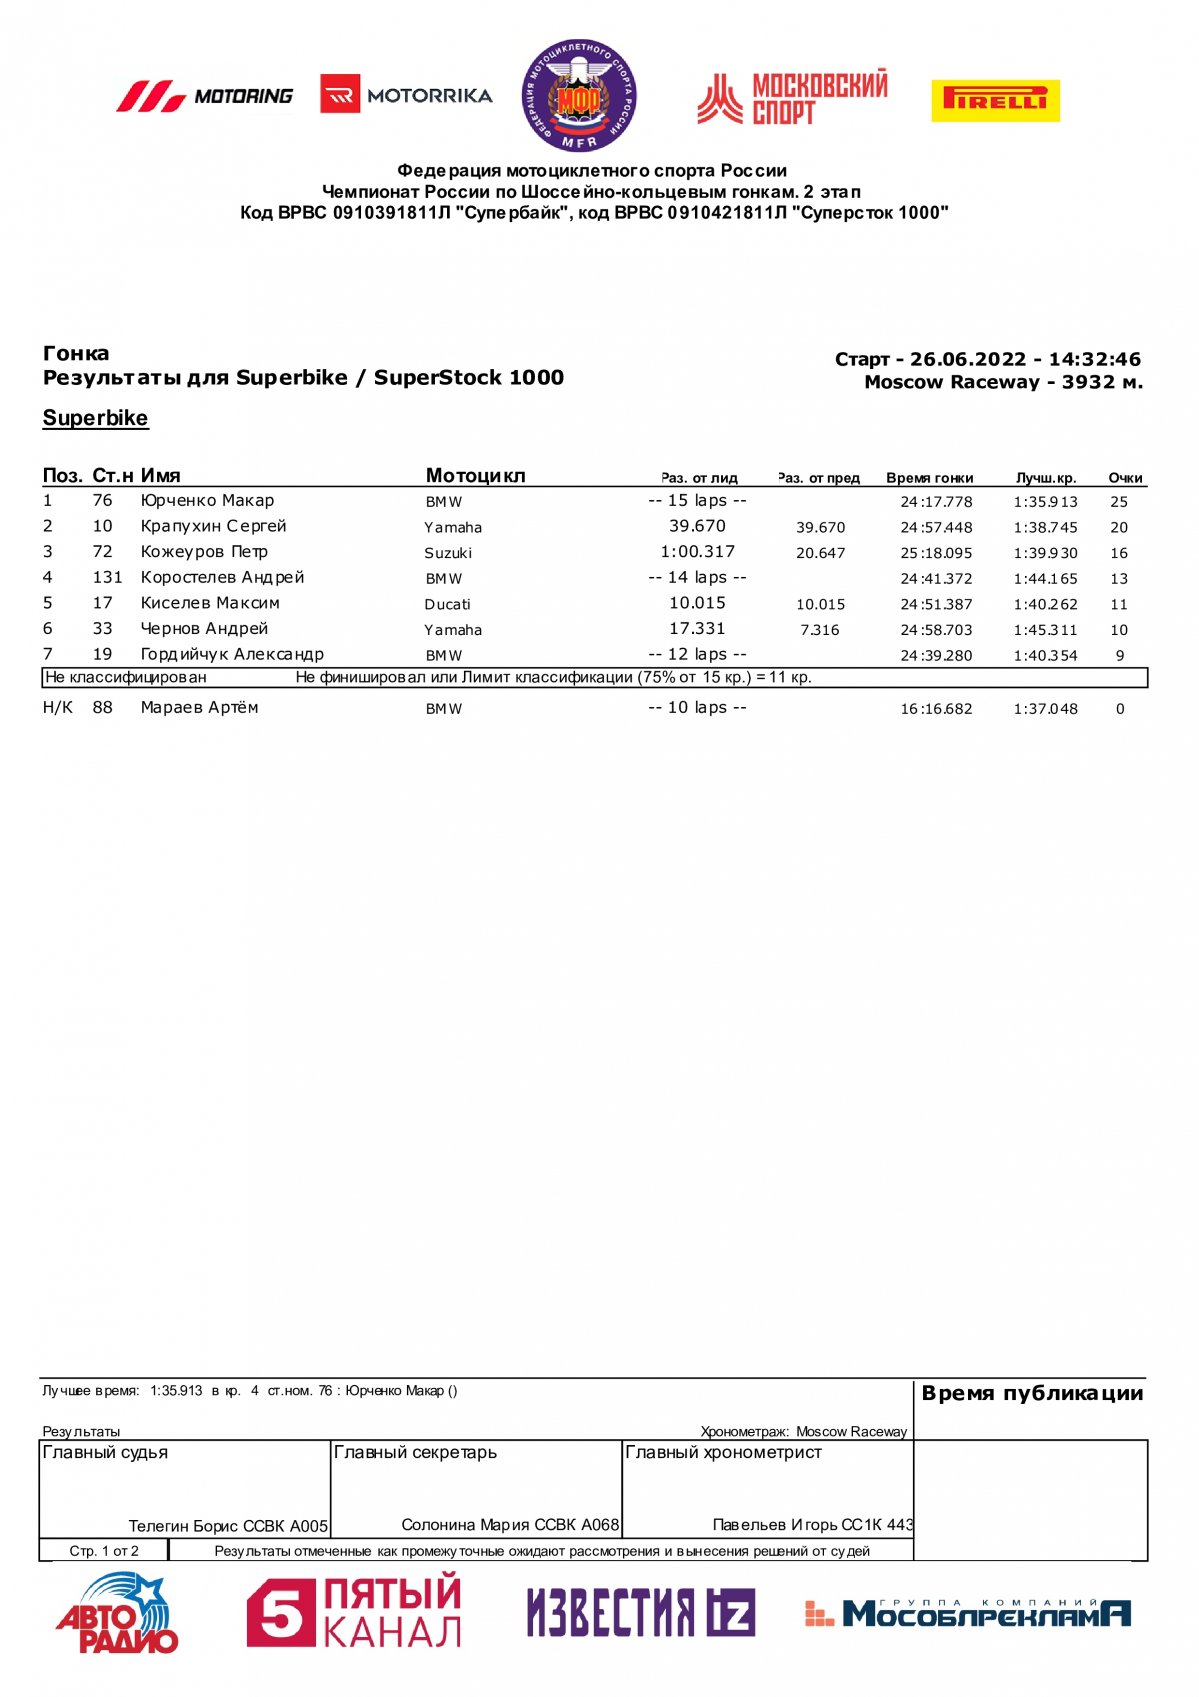 Результаты 2 этапа Чемпионата России по Супербайку, Moscow Raceway (26/06/2022)